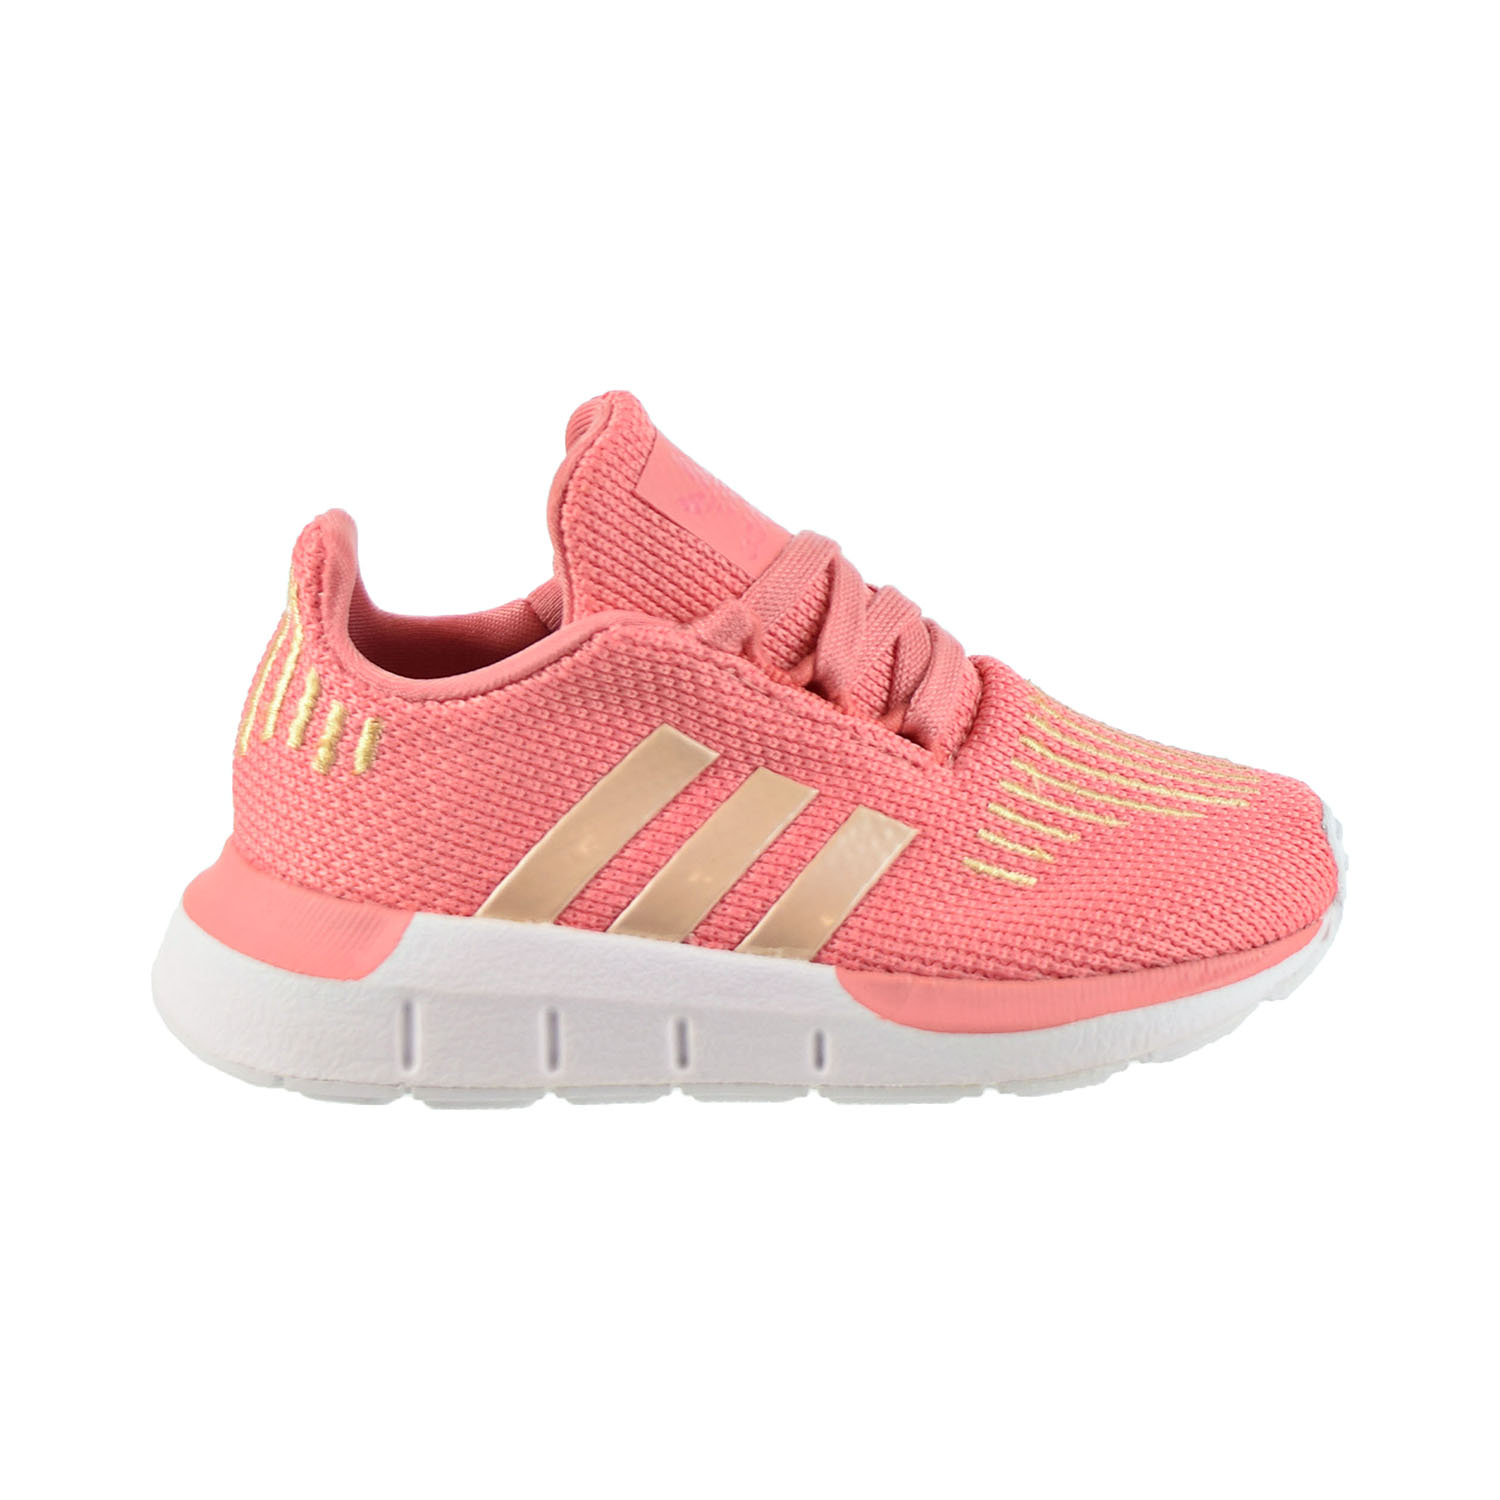 adidas swift run toddler pink